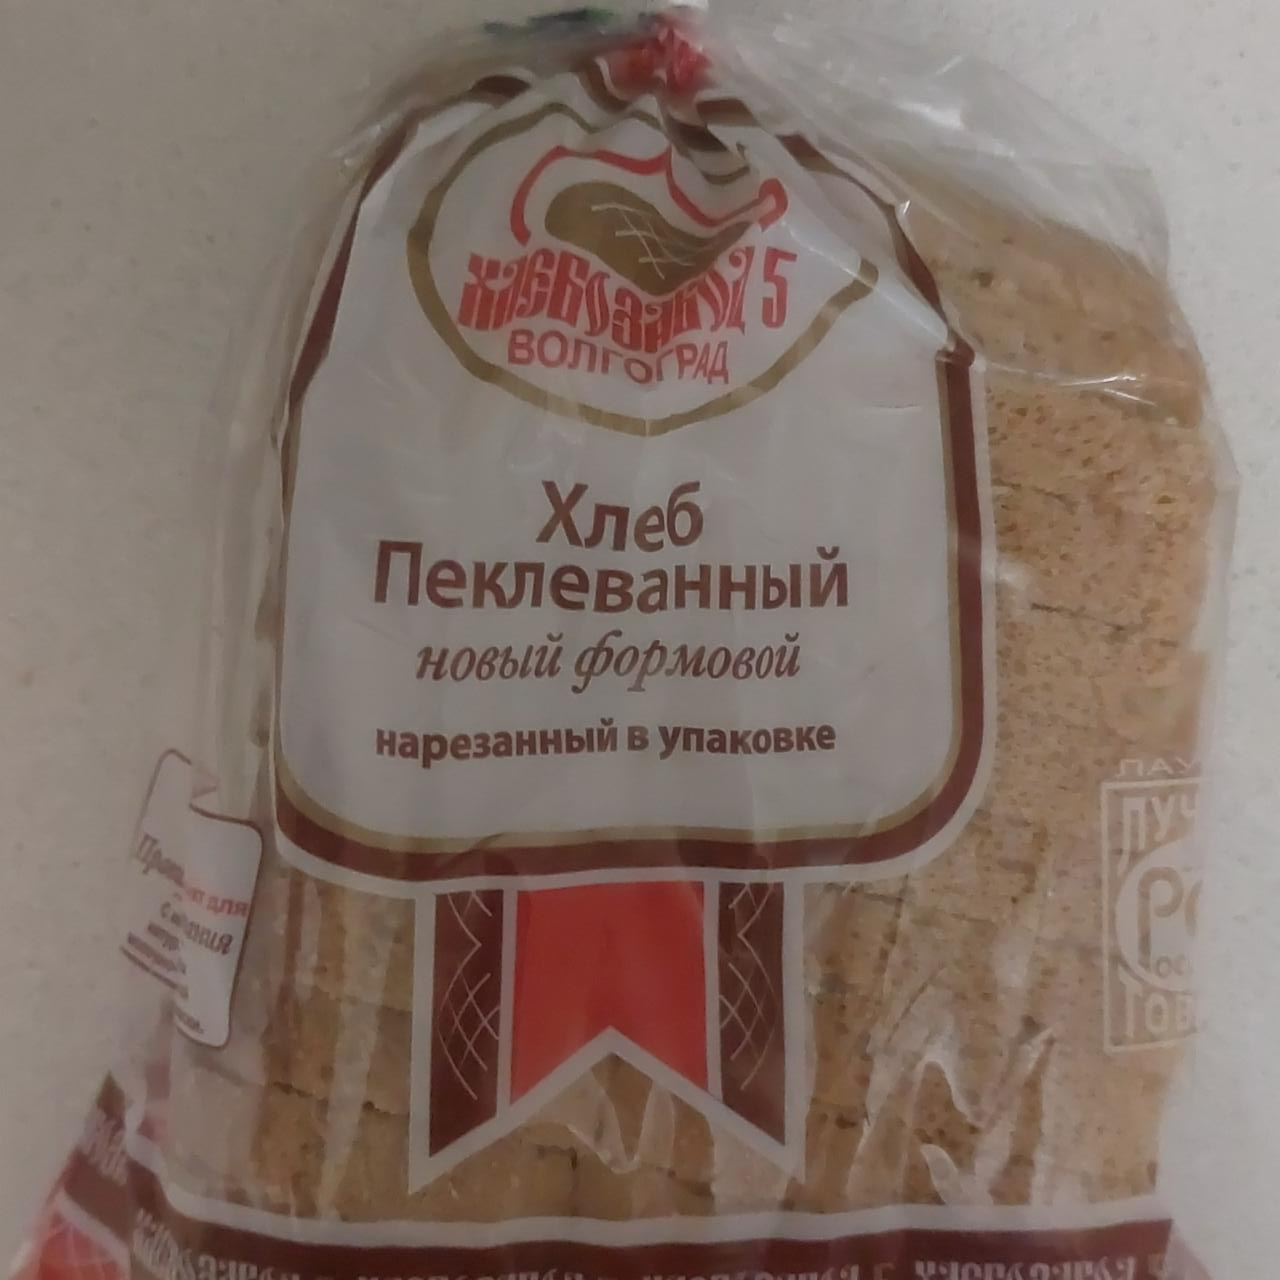 Фото - Хлеб пеклеванный Хлебозавод №5 Волгоград